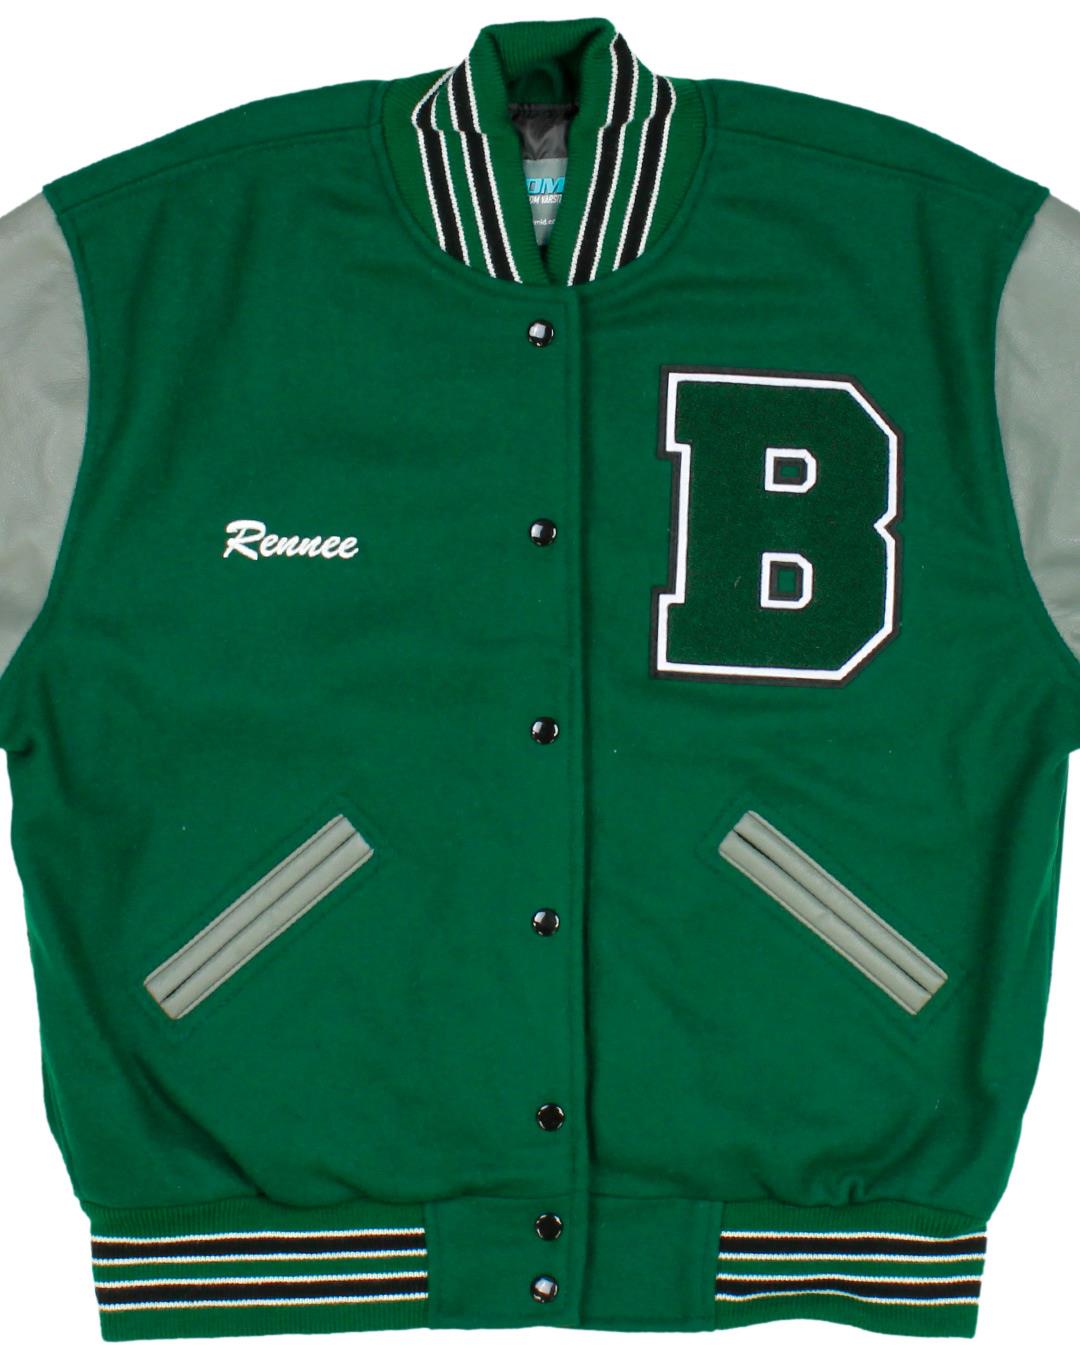 Burroughs High School Letterman Jacket, Ridgecrest, CA - Front